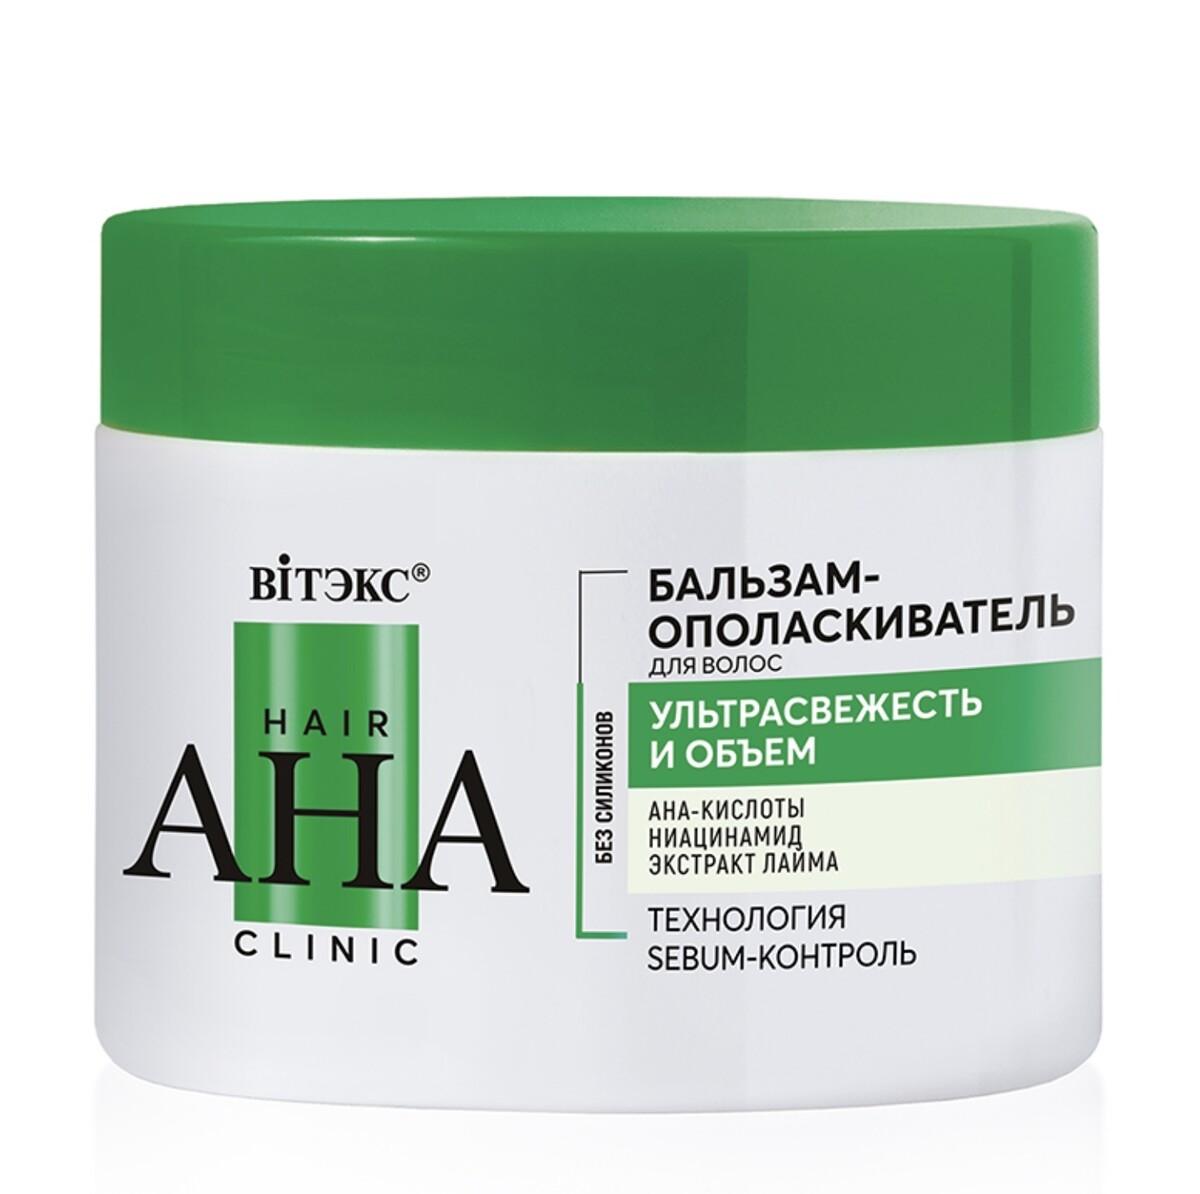 Hair aha clinic бальзам-ополаскиватель для волос ультрасвежесть и объем 300мл бальзам для роста и утолщения волос с никотинамидом биотином 300мл